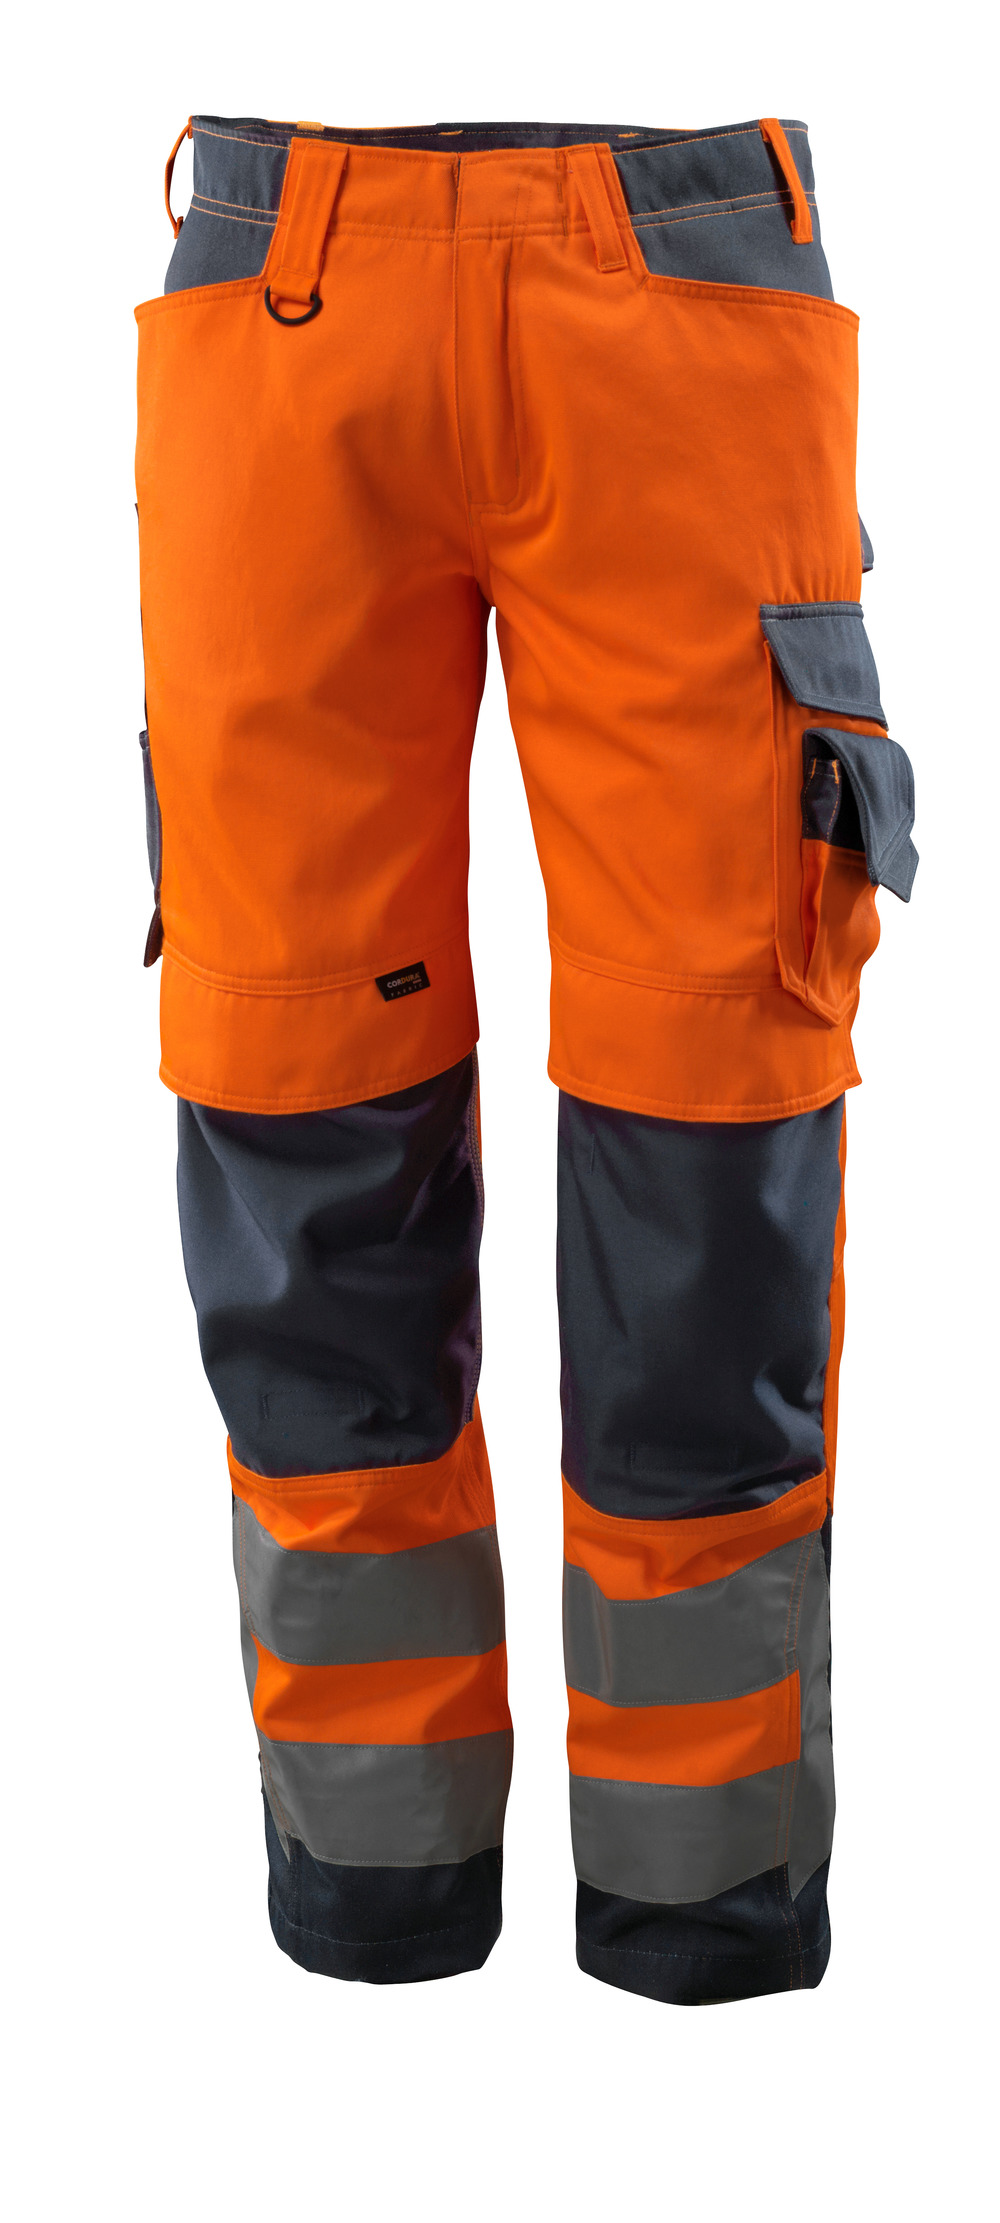 MASCOT-Warnschutz, Warn-Bund-Hose, Kendal,  82 cm, 290 g/m², orange/schwarzblau

